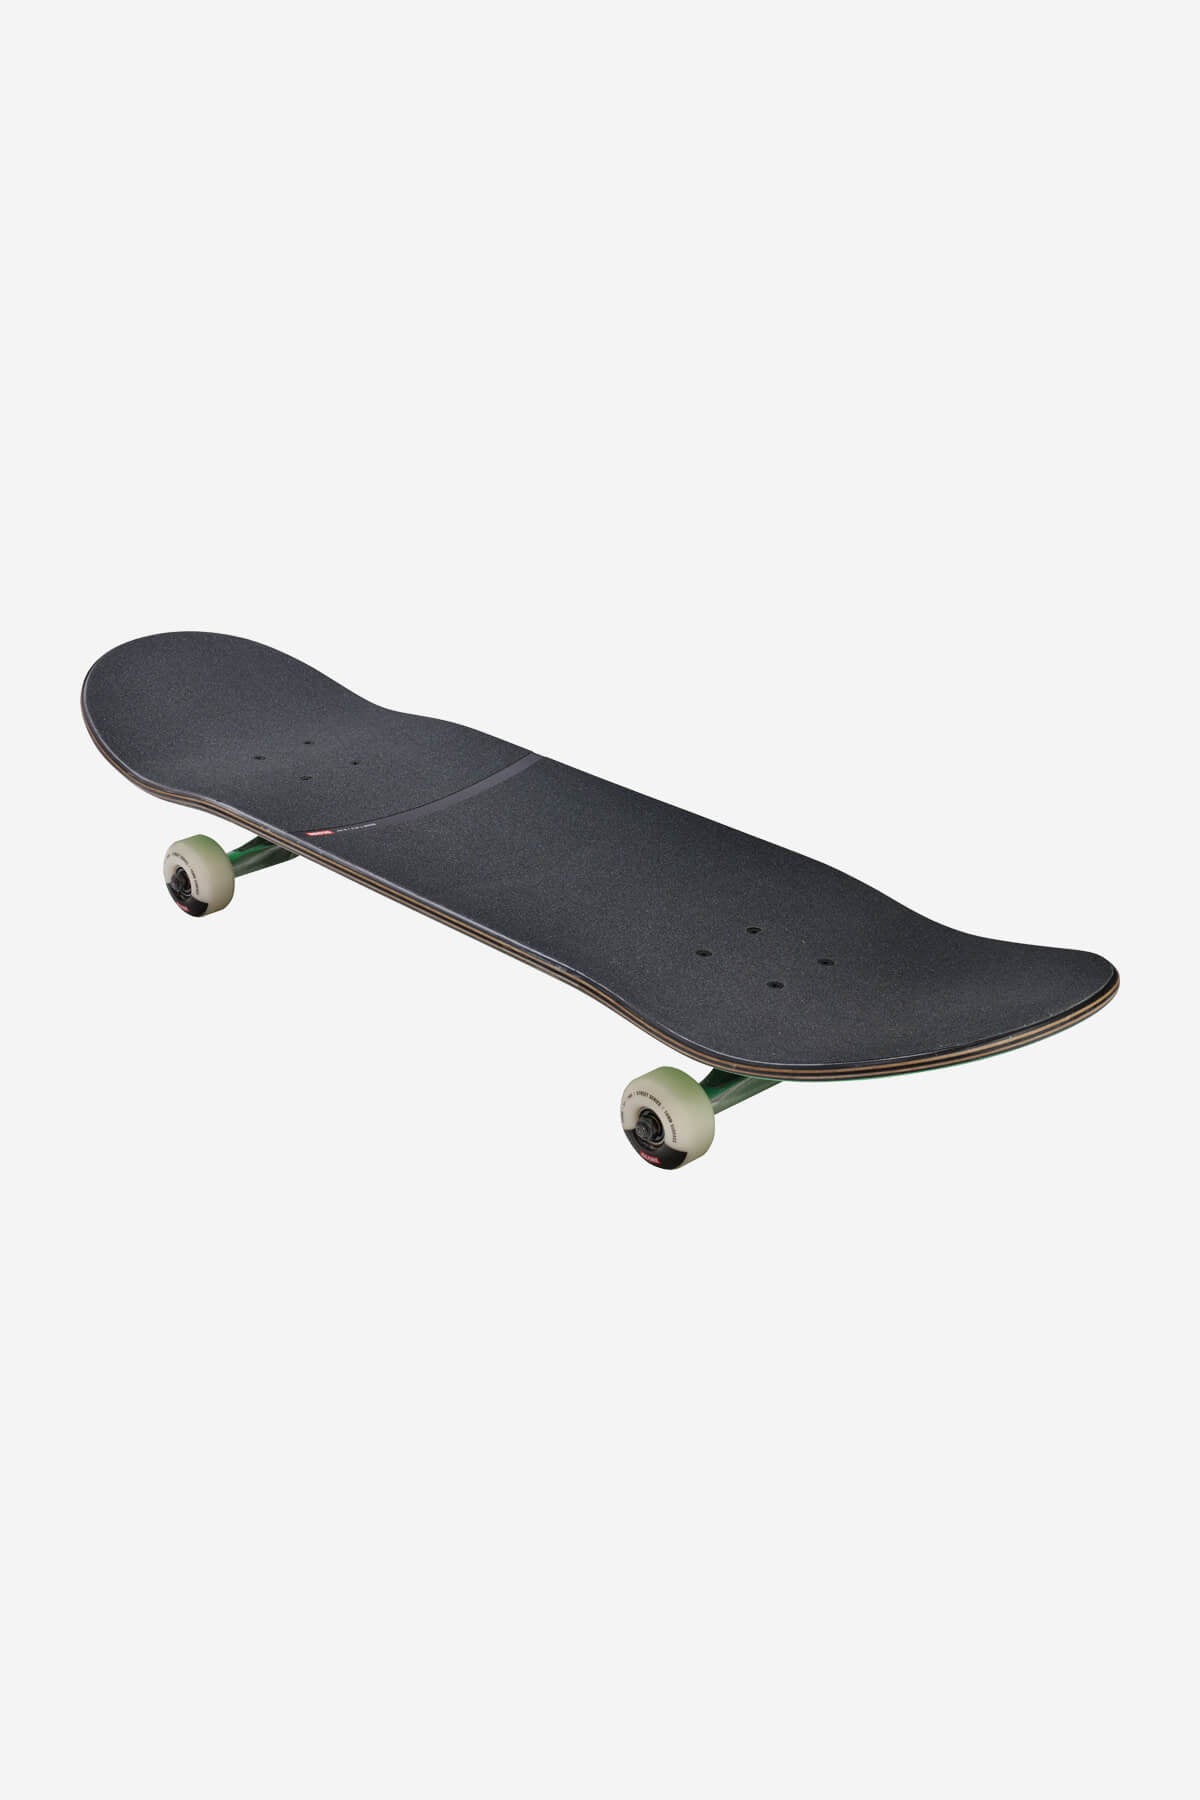 g1 lineform 2 mint 8.25" complete skateboard